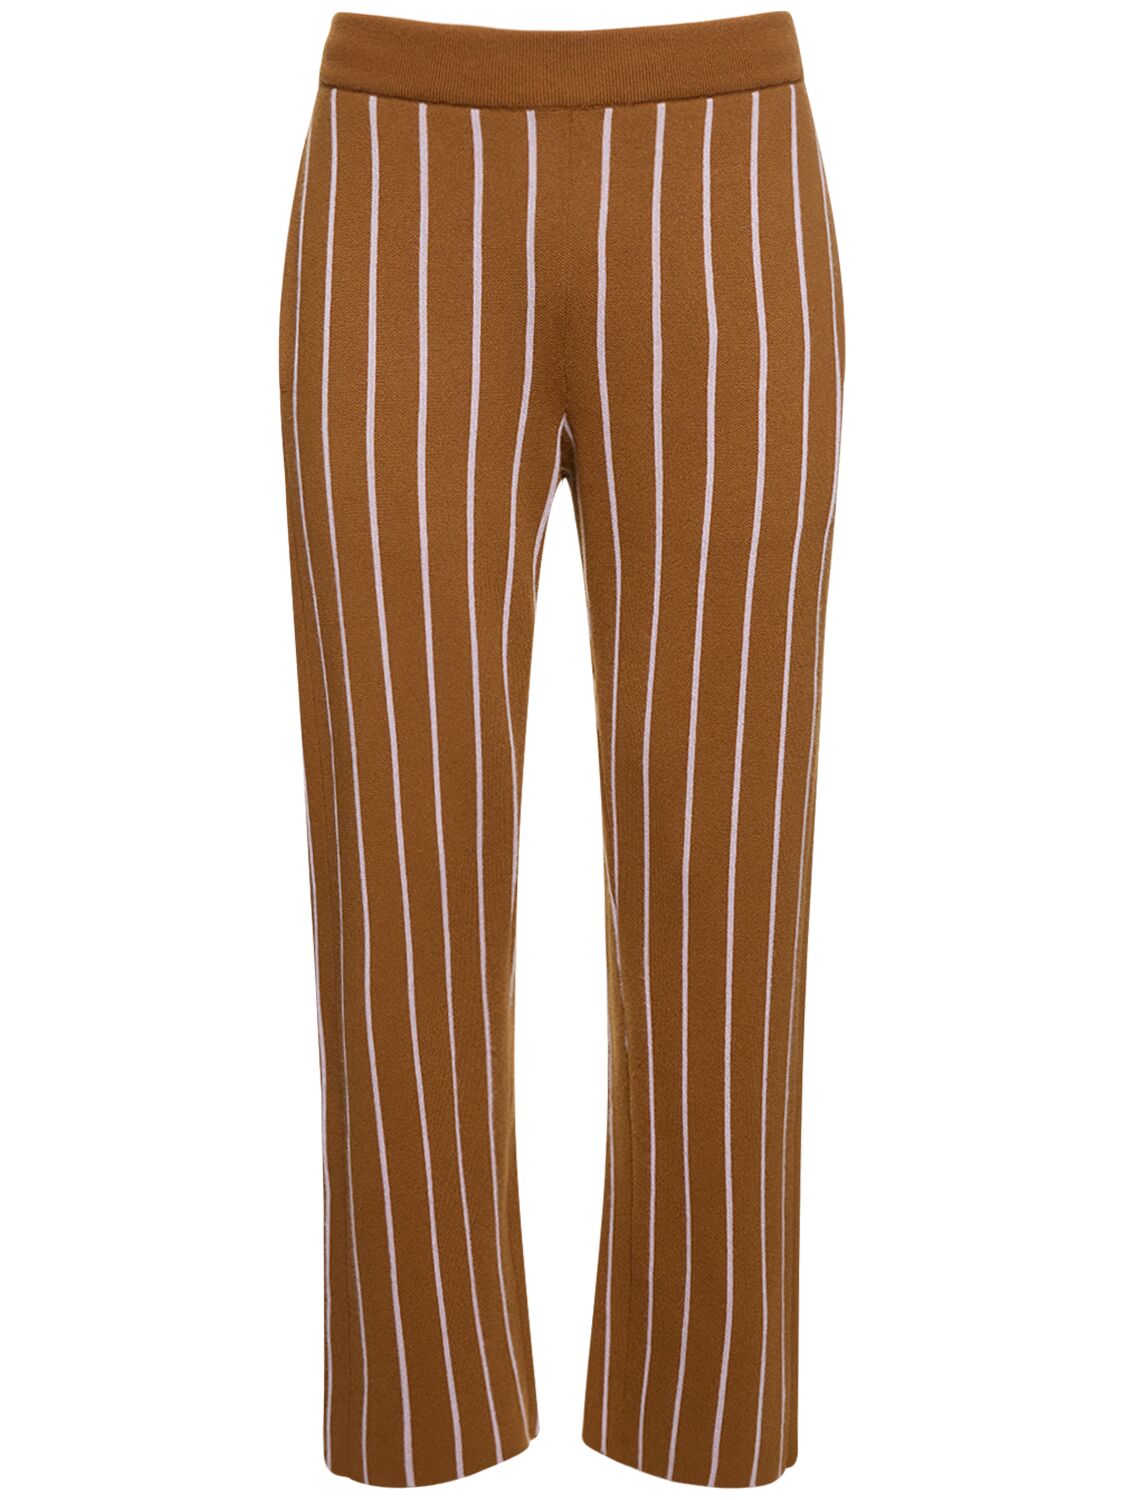 Striped Cashmere Pants – MEN > CLOTHING > PANTS